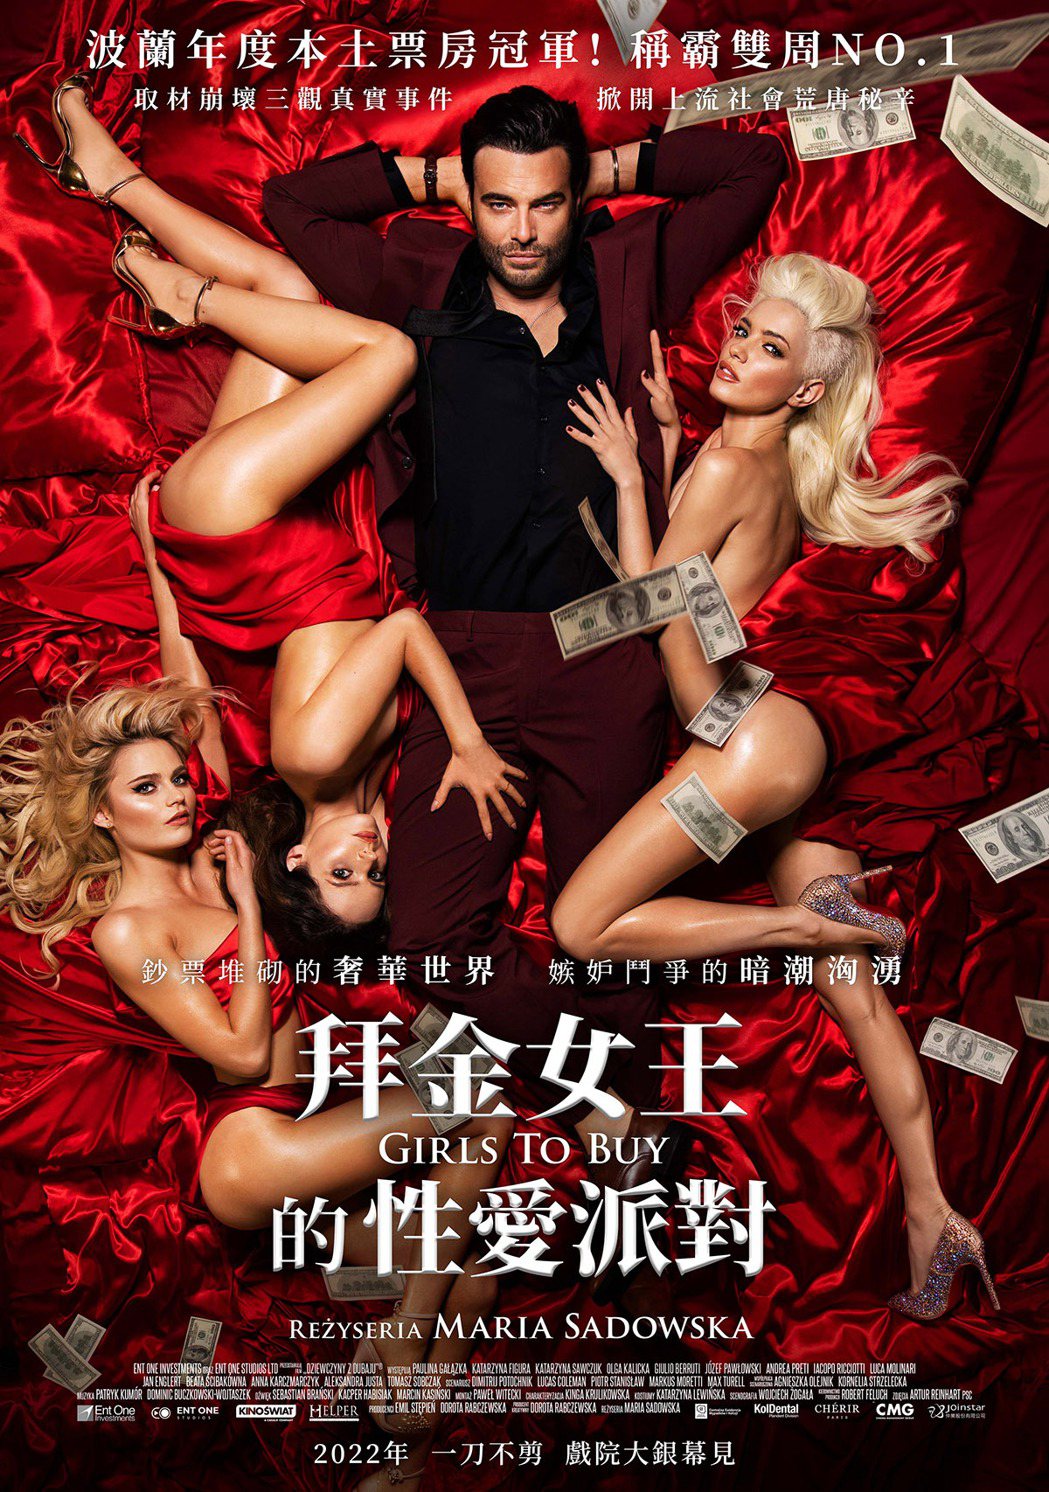 《拜金女王的性愛派對》中文海報。仲業文創提供